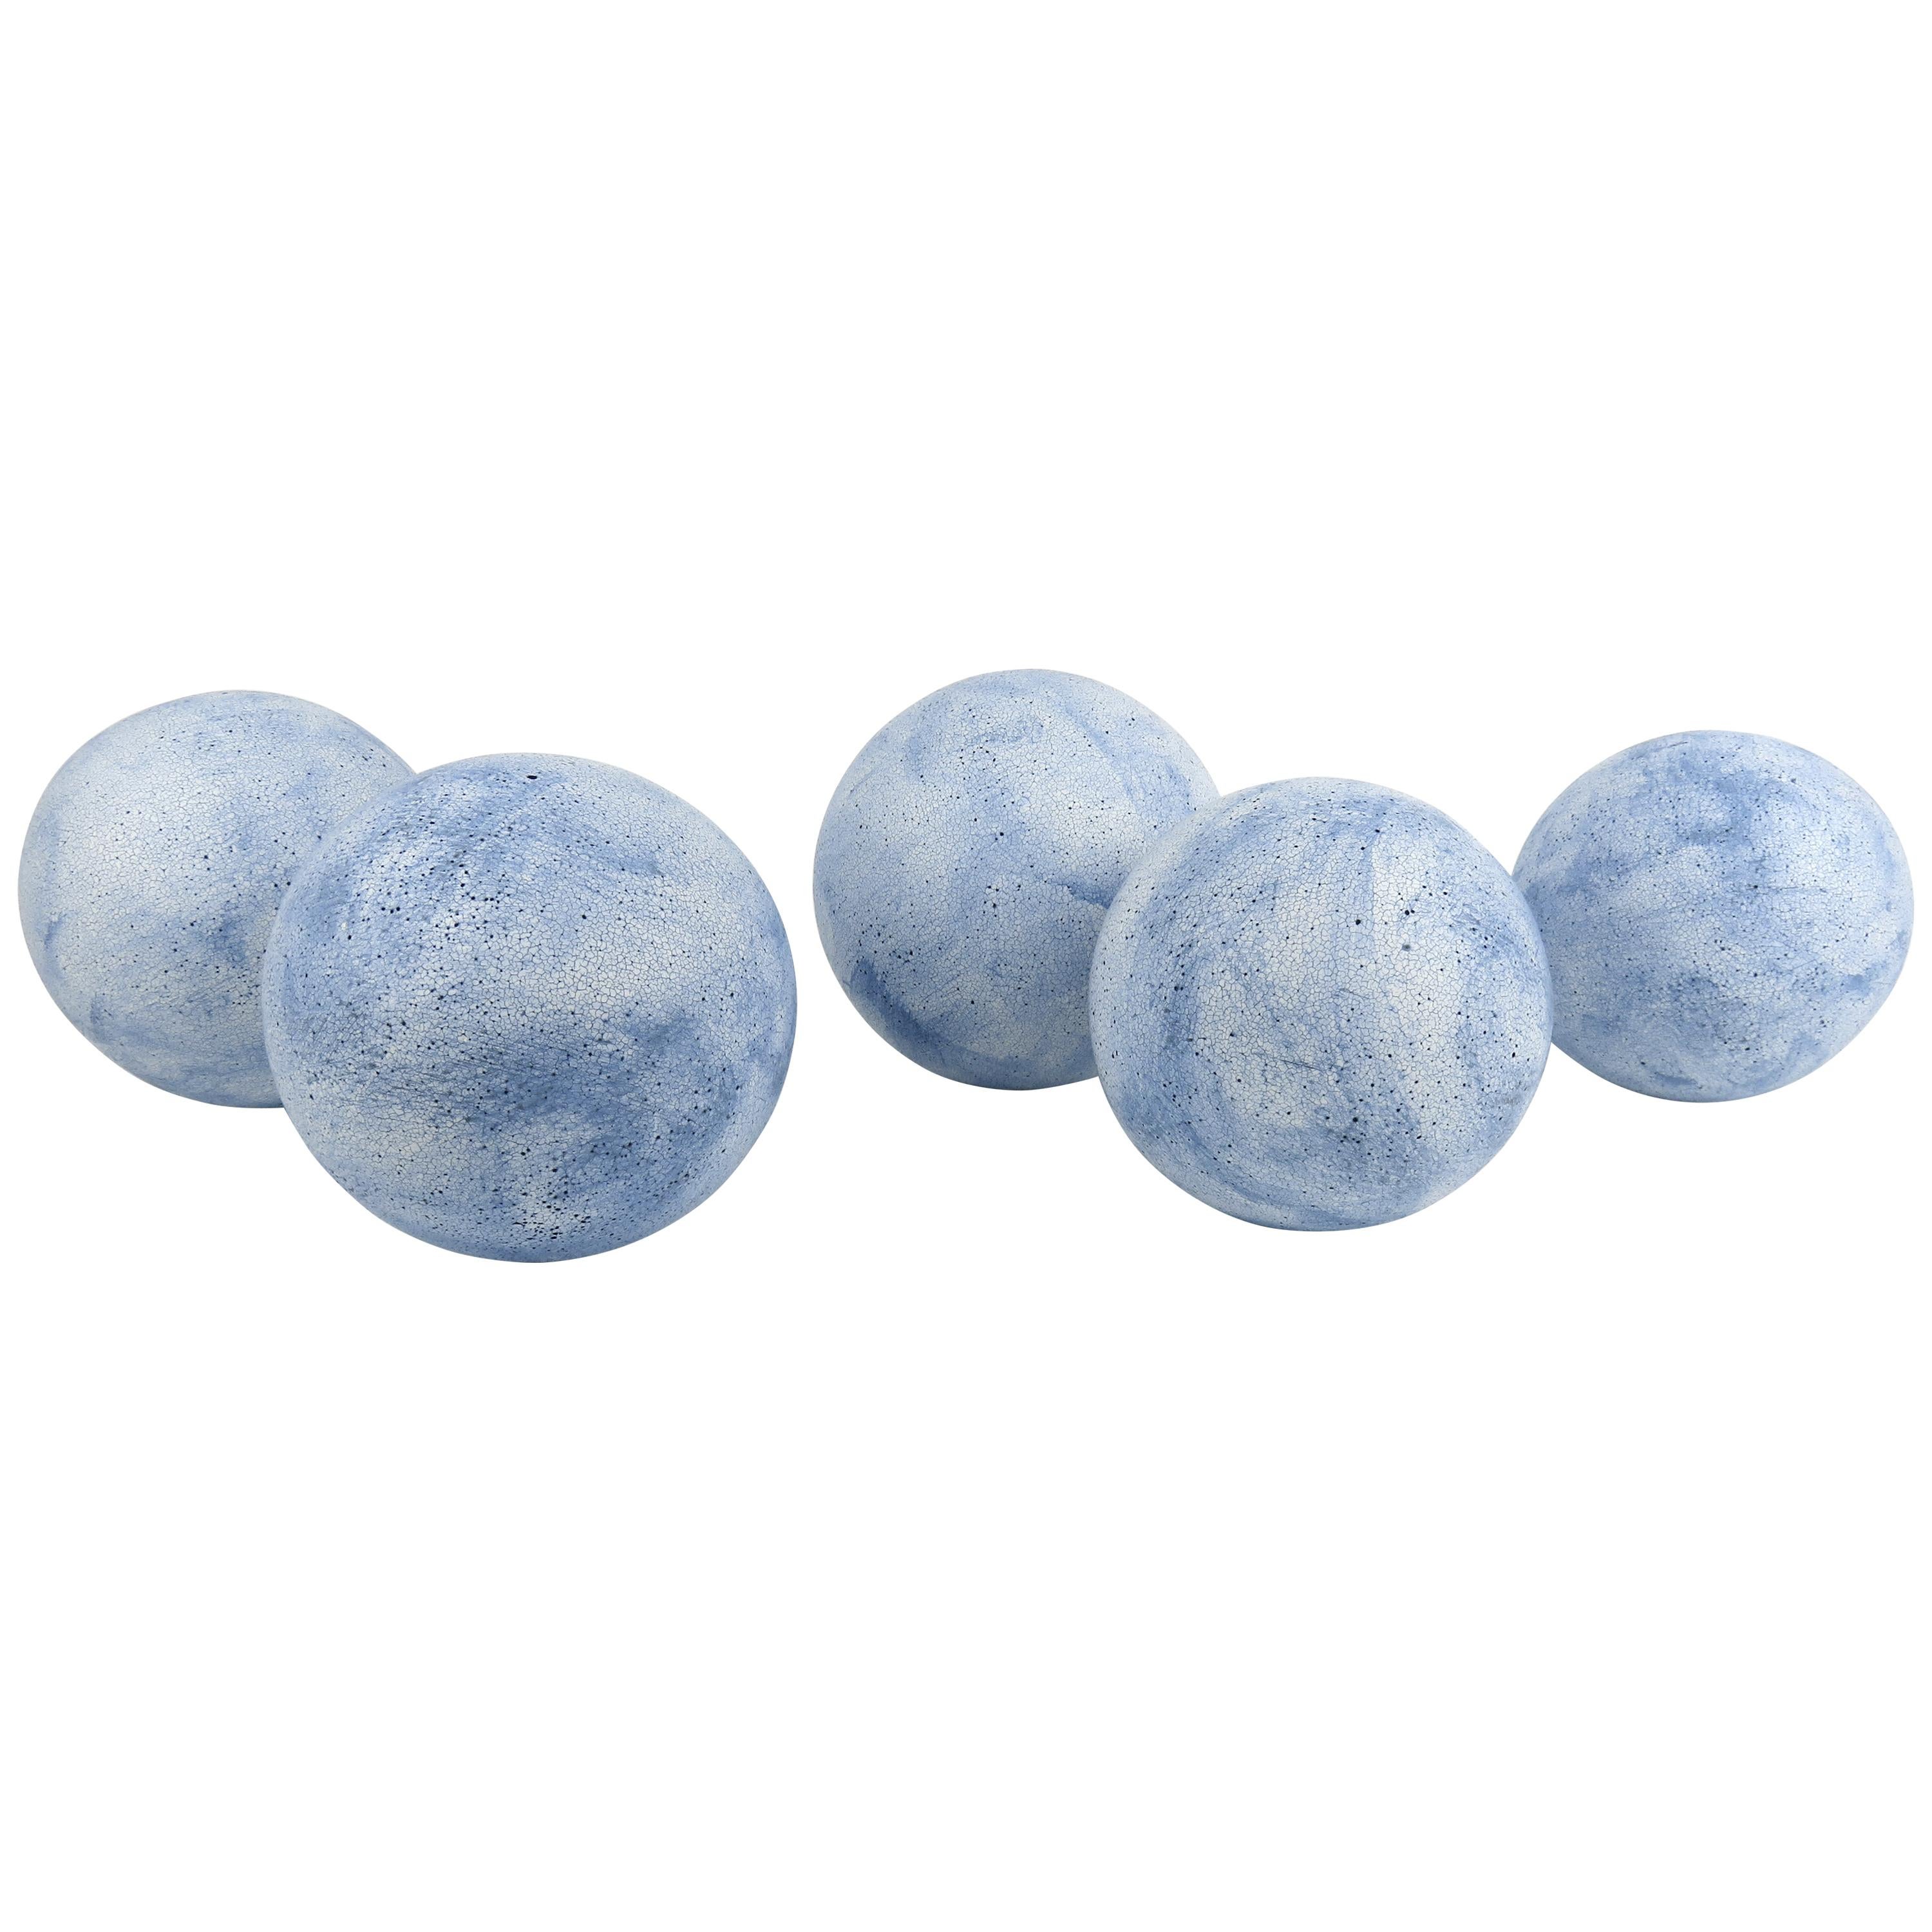 Hand Built Sky Blue Ceramic Spheres, Terra Sigilatta & Cobalt Oxide